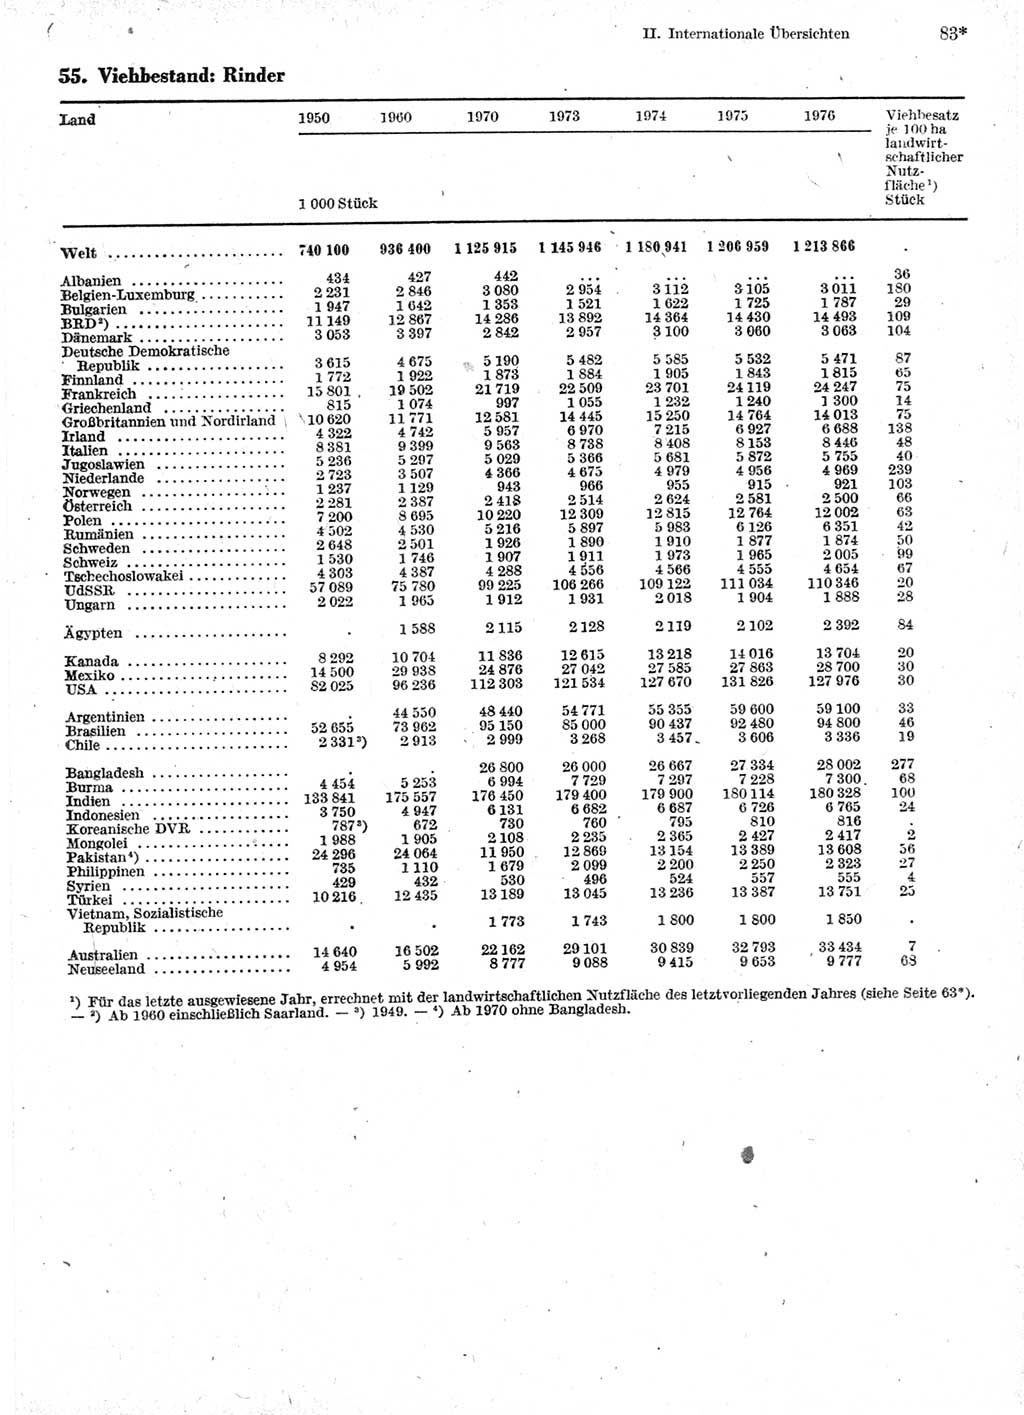 Statistisches Jahrbuch der Deutschen Demokratischen Republik (DDR) 1978, Seite 83 (Stat. Jb. DDR 1978, S. 83)